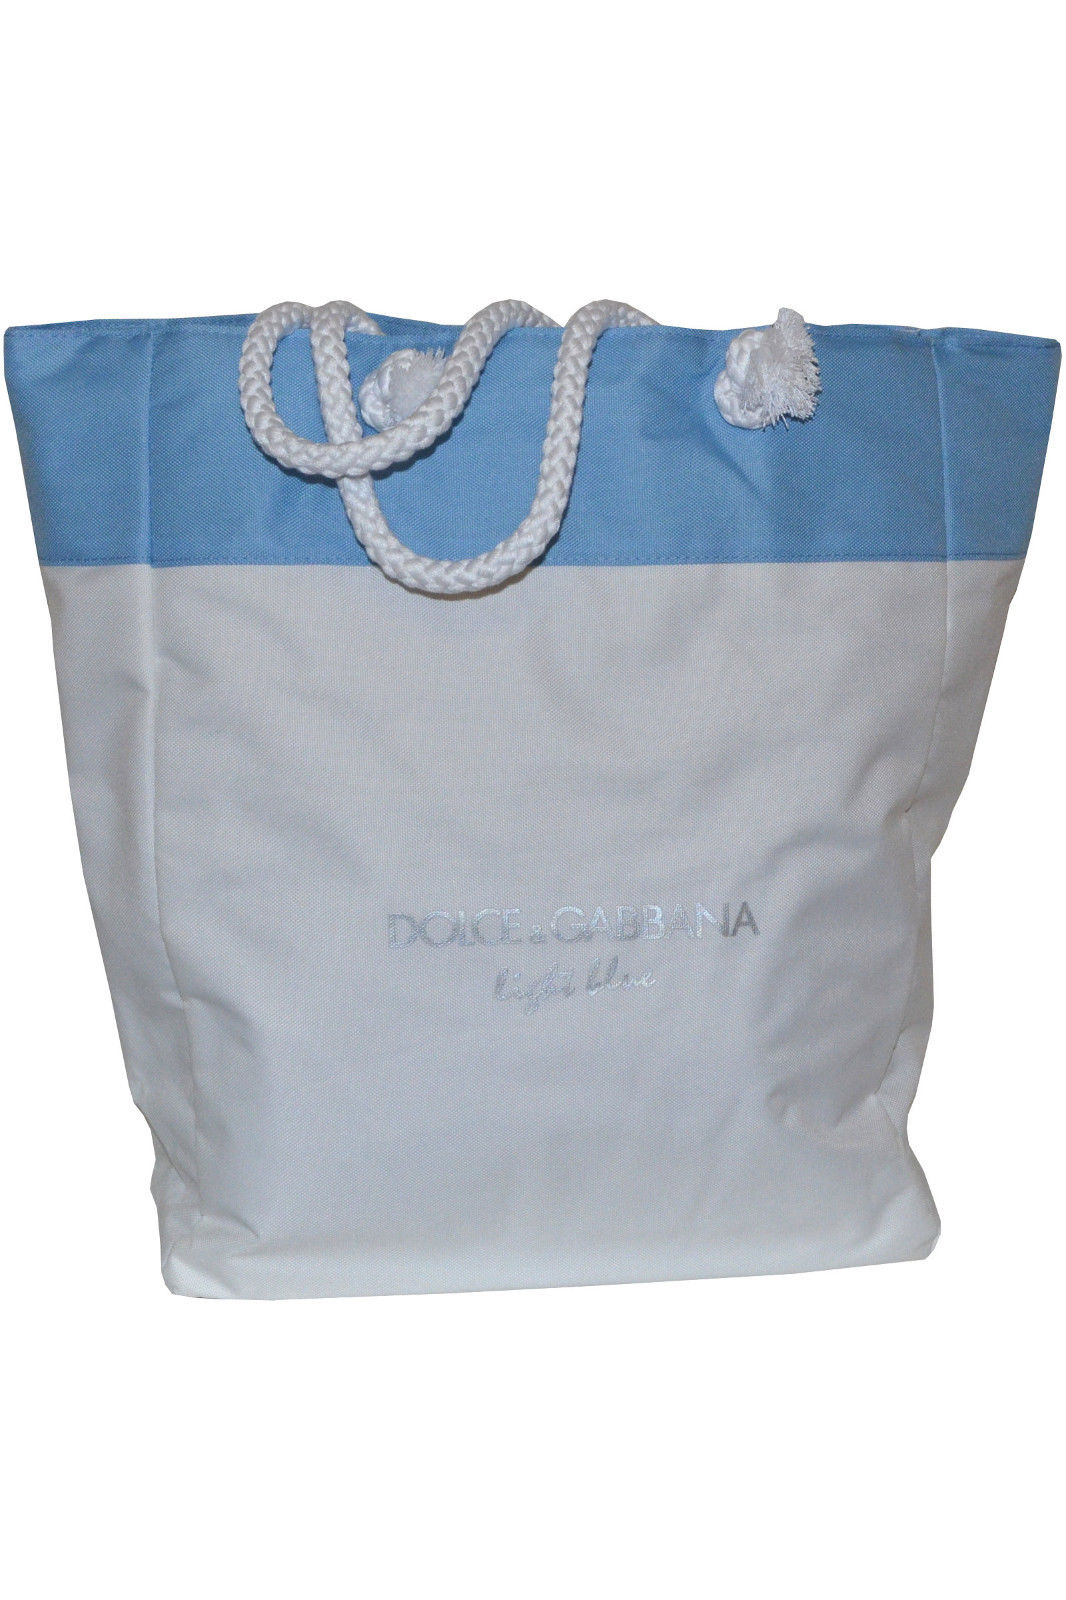 dolce gabbana blue bag